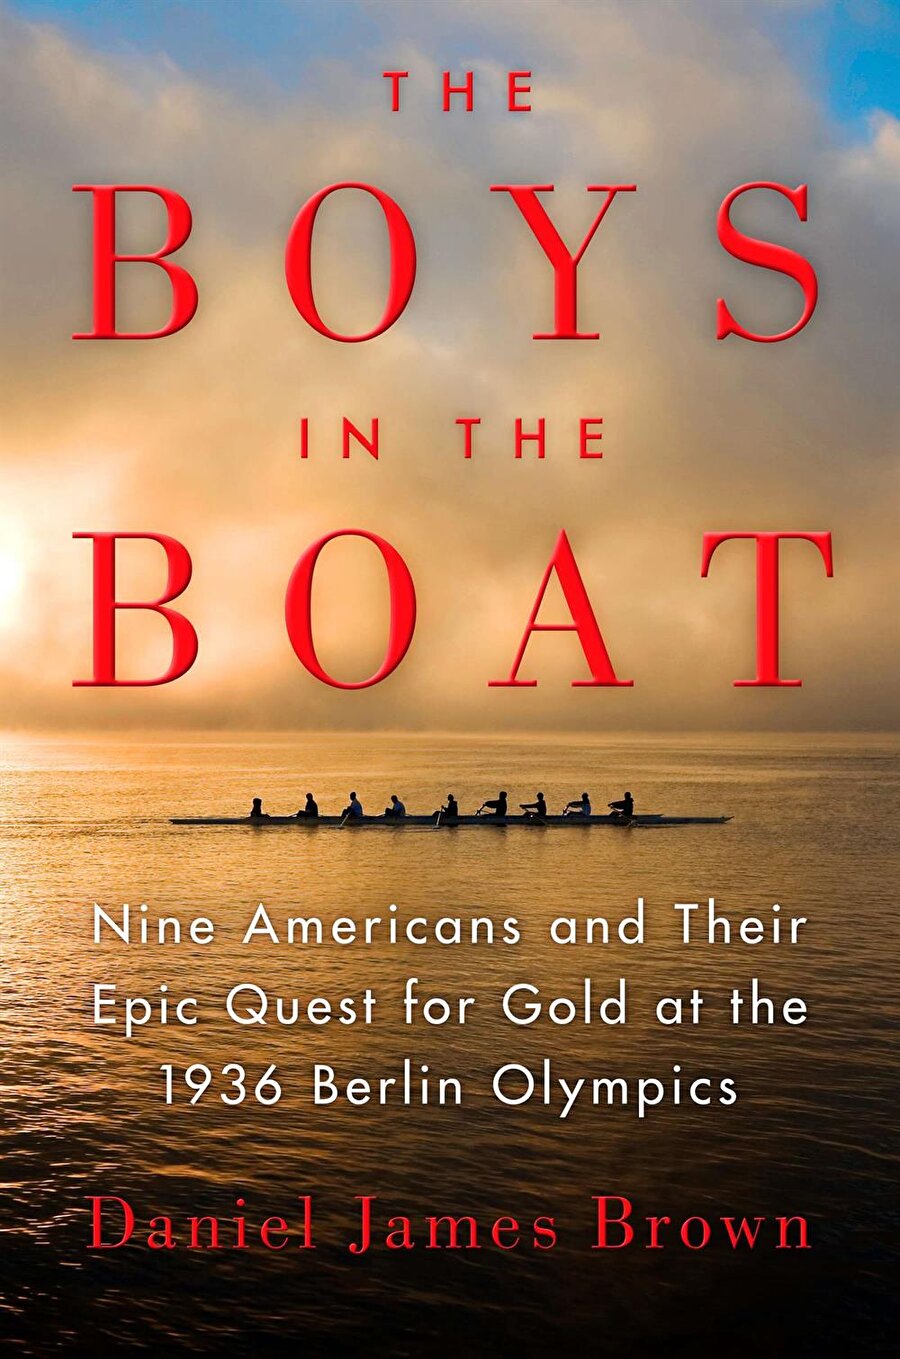 James Gorman
Morgan Stanley'in başkan ve CEO''su olan James Gorman çok önemli işler başarmış kararlı amatörlerin hikayesinde "The Boys in the Boat"ta ilham buluyor.https://www.amazon.com/Boys-Bo...